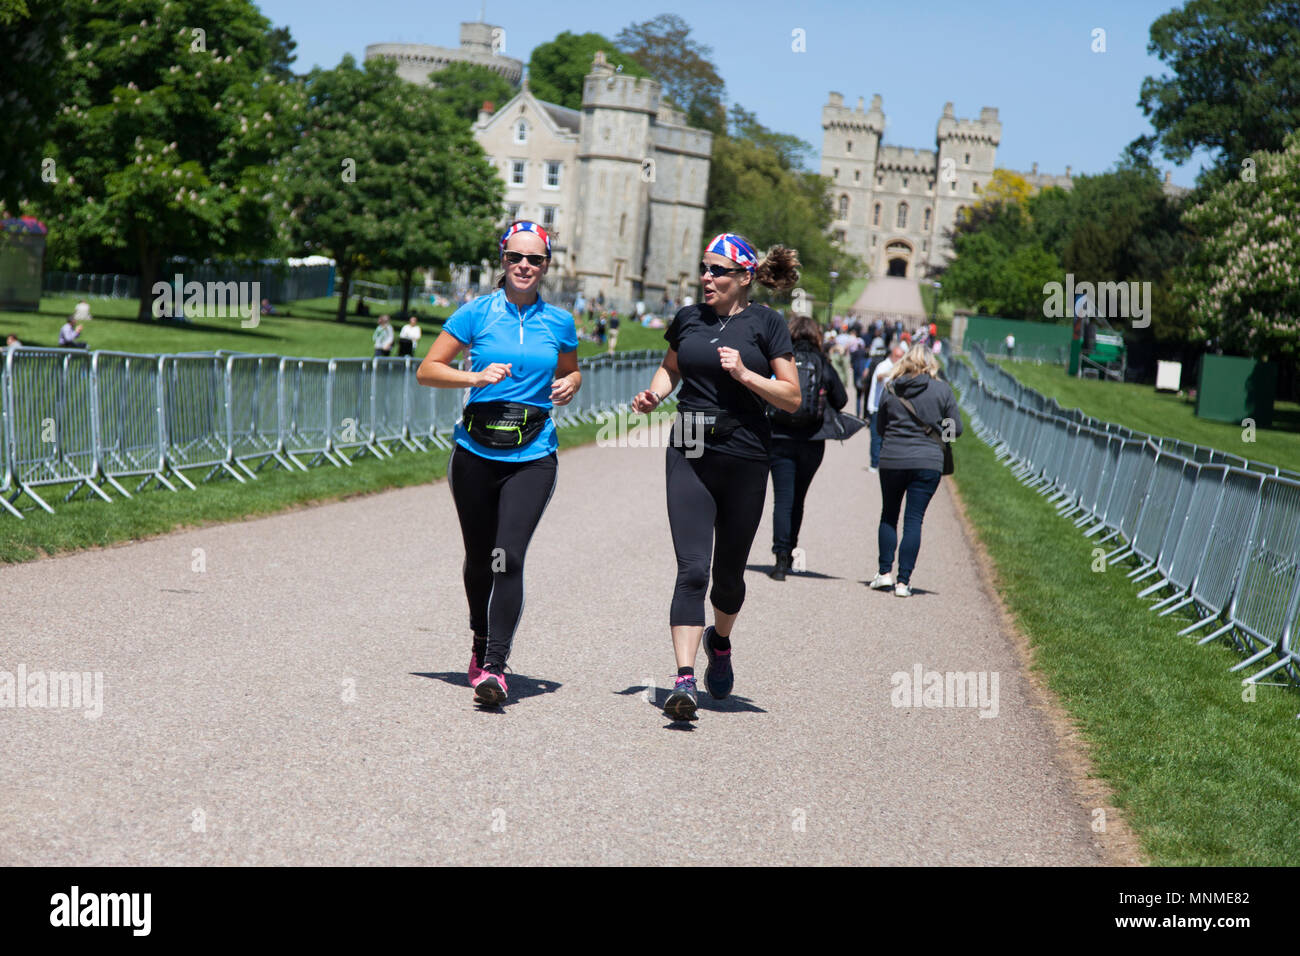 Windsor, Berkshire, Royaume-Uni. 17 mai 2018. Les gens commencent à arriver à Windsor avant le mariage du prince Harry et Meghan Markle Goutte d'encre : Crédit/Alamy Live News Banque D'Images